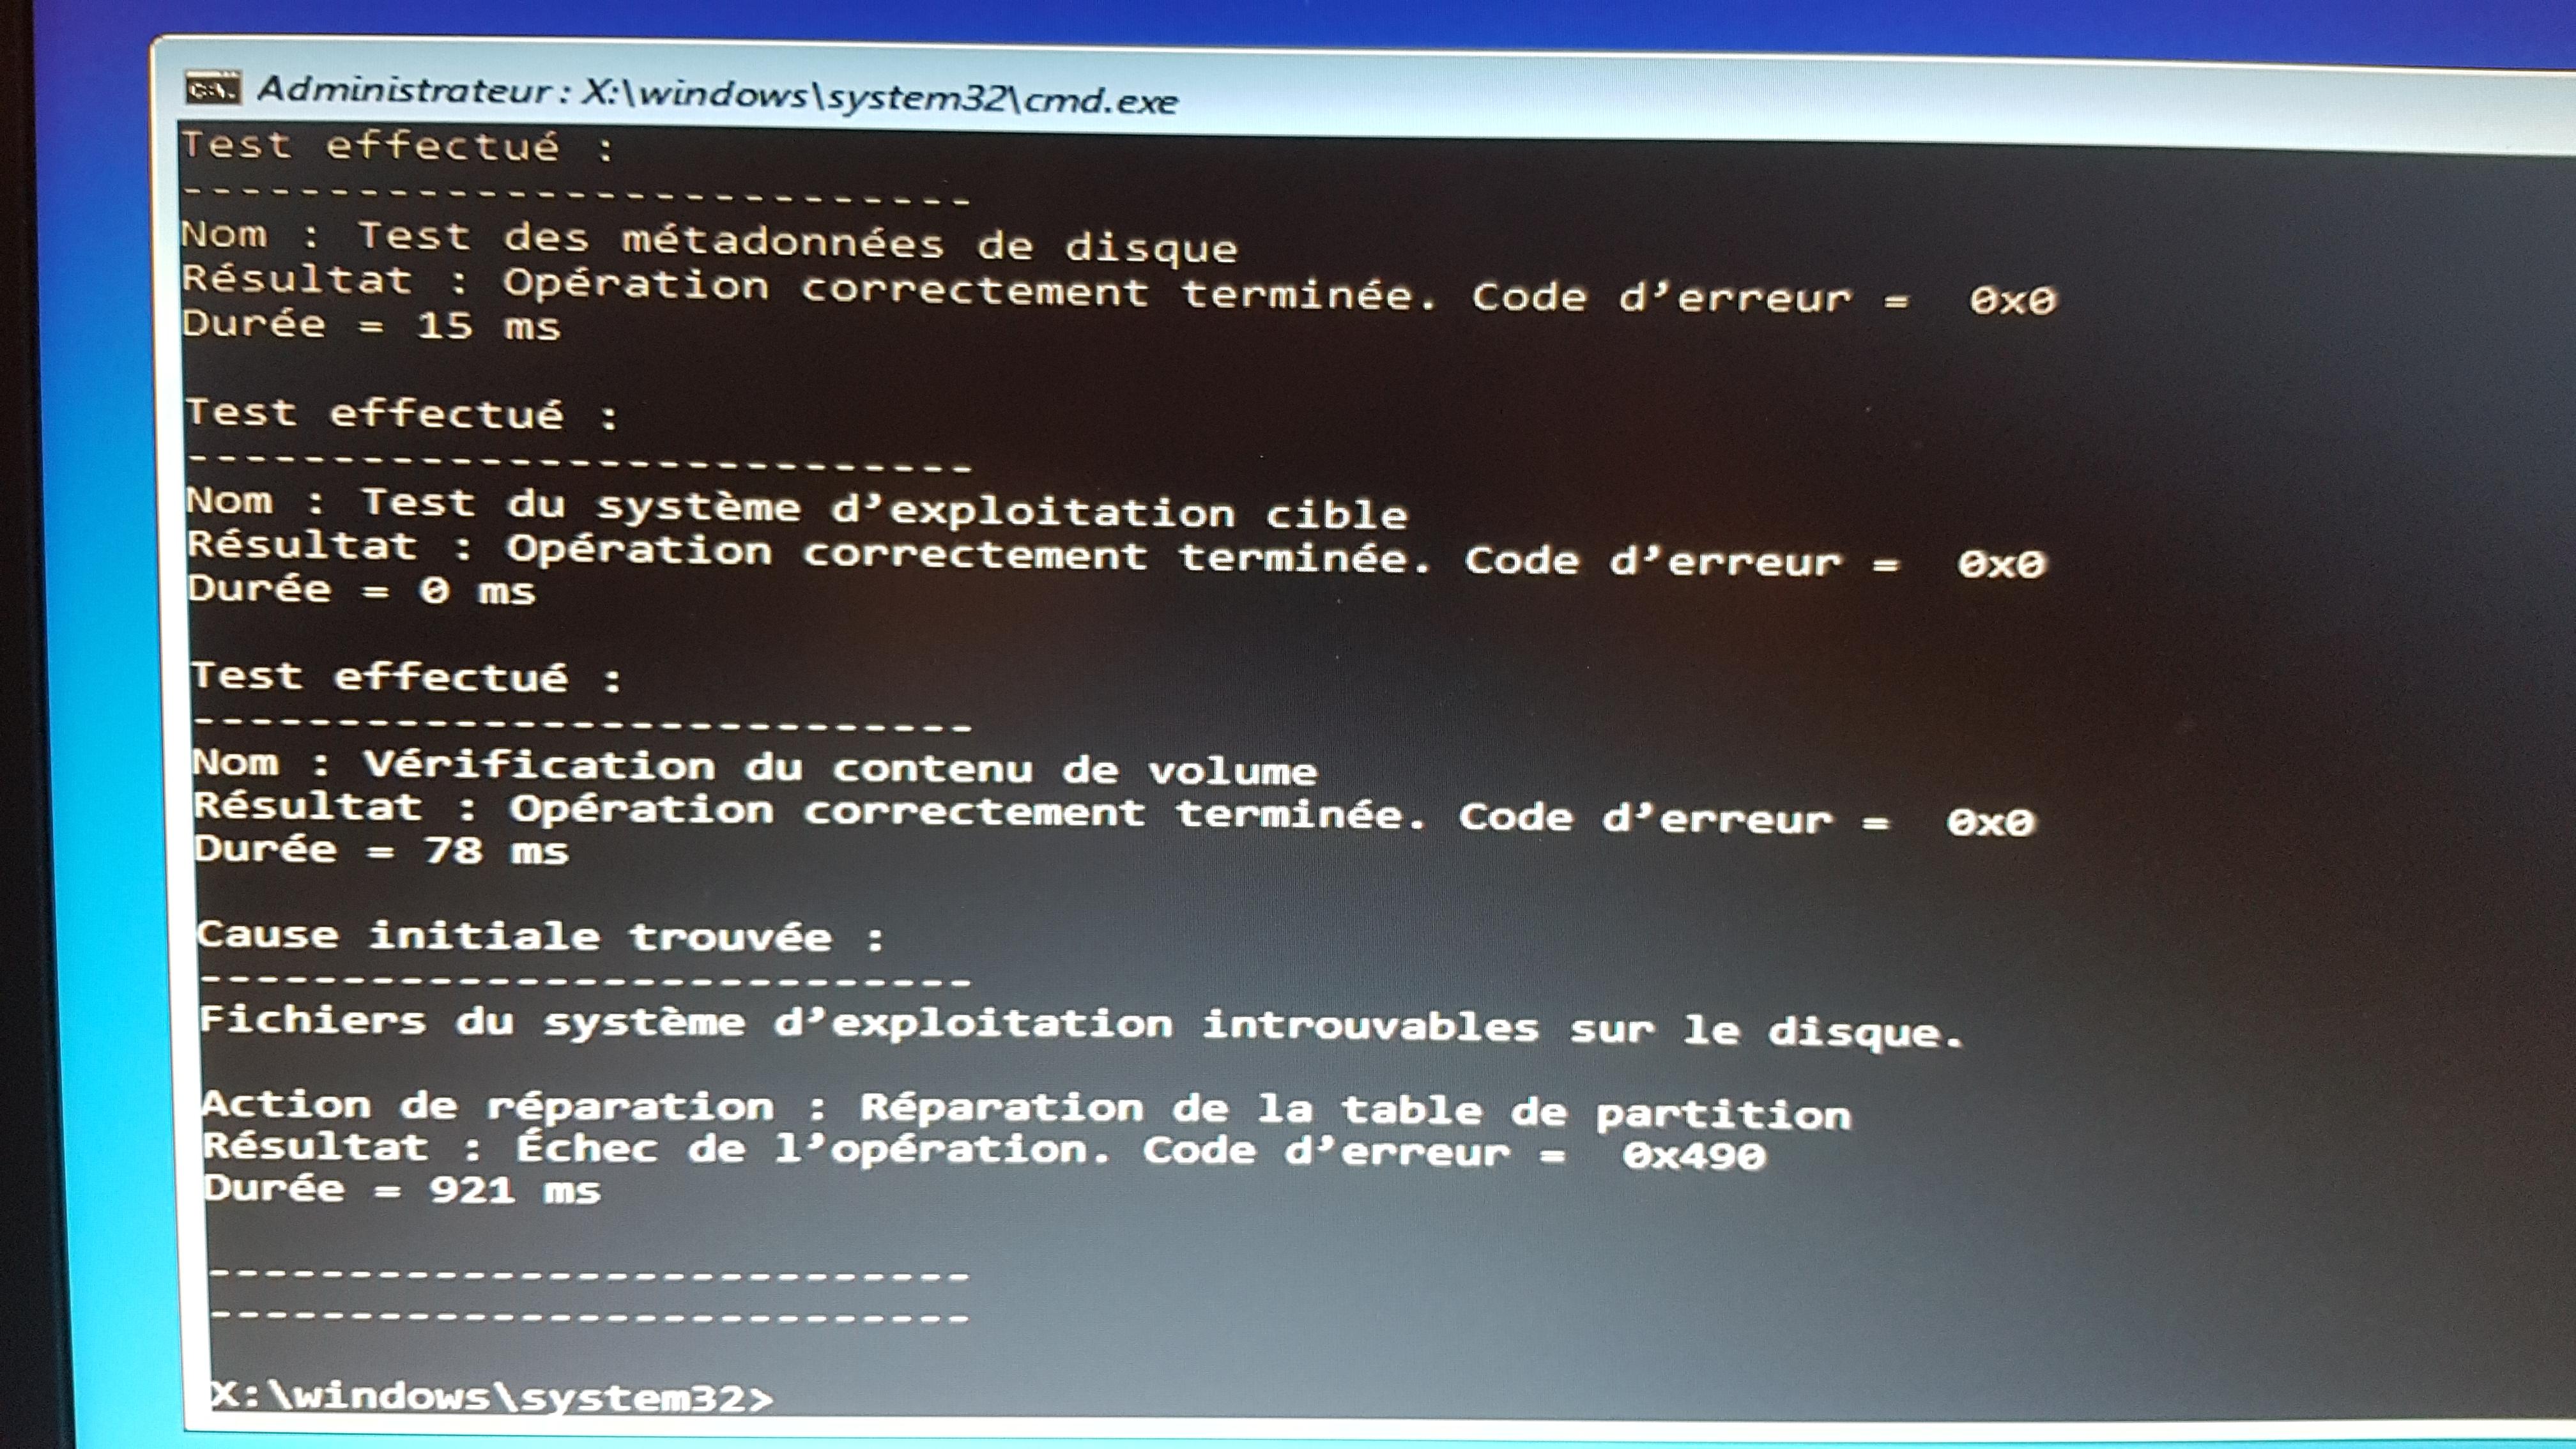 Erreur SrtTrail.txt lors de la réparation automatique de Windows 10 – Le  Crabe Info